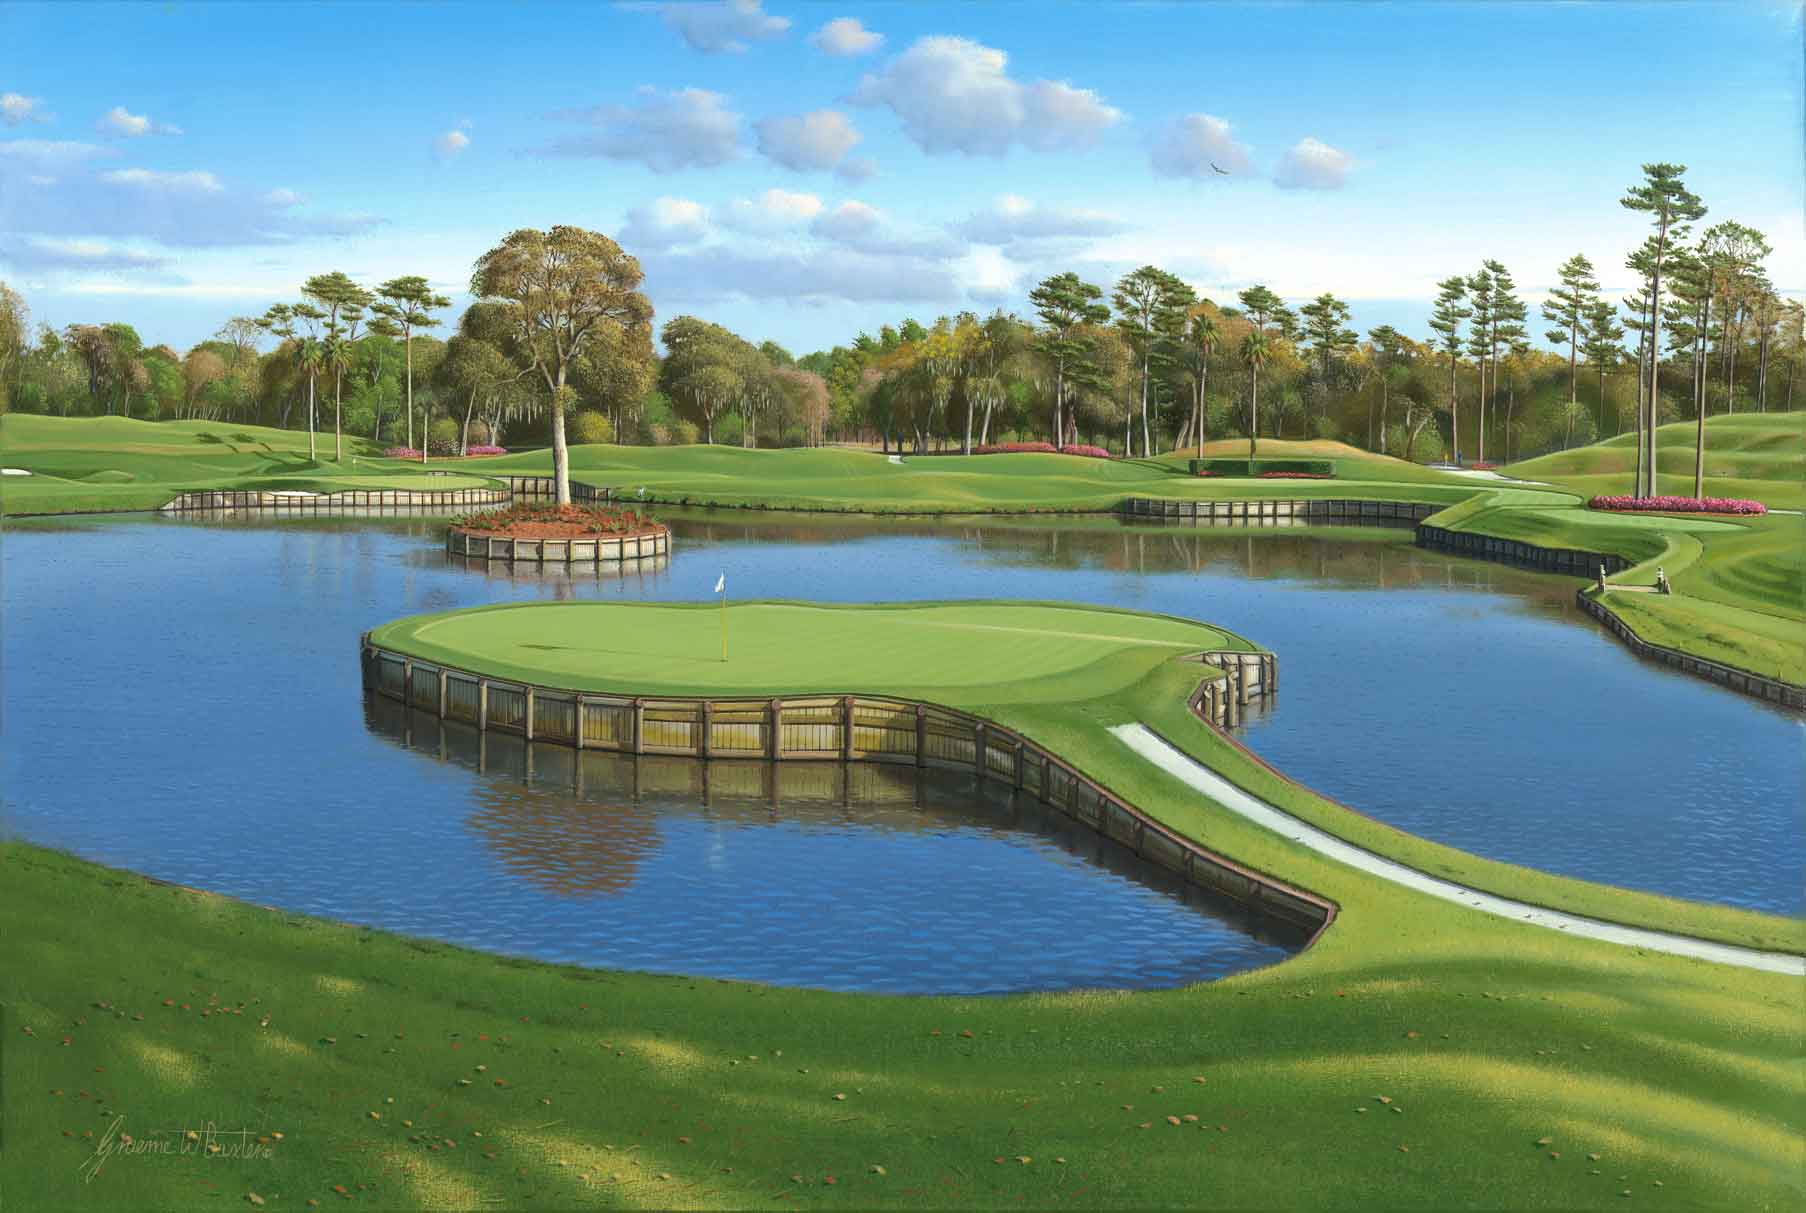 Golf (Sân, Hình nền desktop, Tải về miễn phí) sẽ mang đến cho bạn những hình ảnh đẹp nhất của sân golf và khung cảnh xung quanh. Với độ phân giải cao và chất lượng tuyệt vời, các hình nền sẽ làm cho màn hình của bạn nổi bật hơn. Tải về ngay để trải nghiệm.